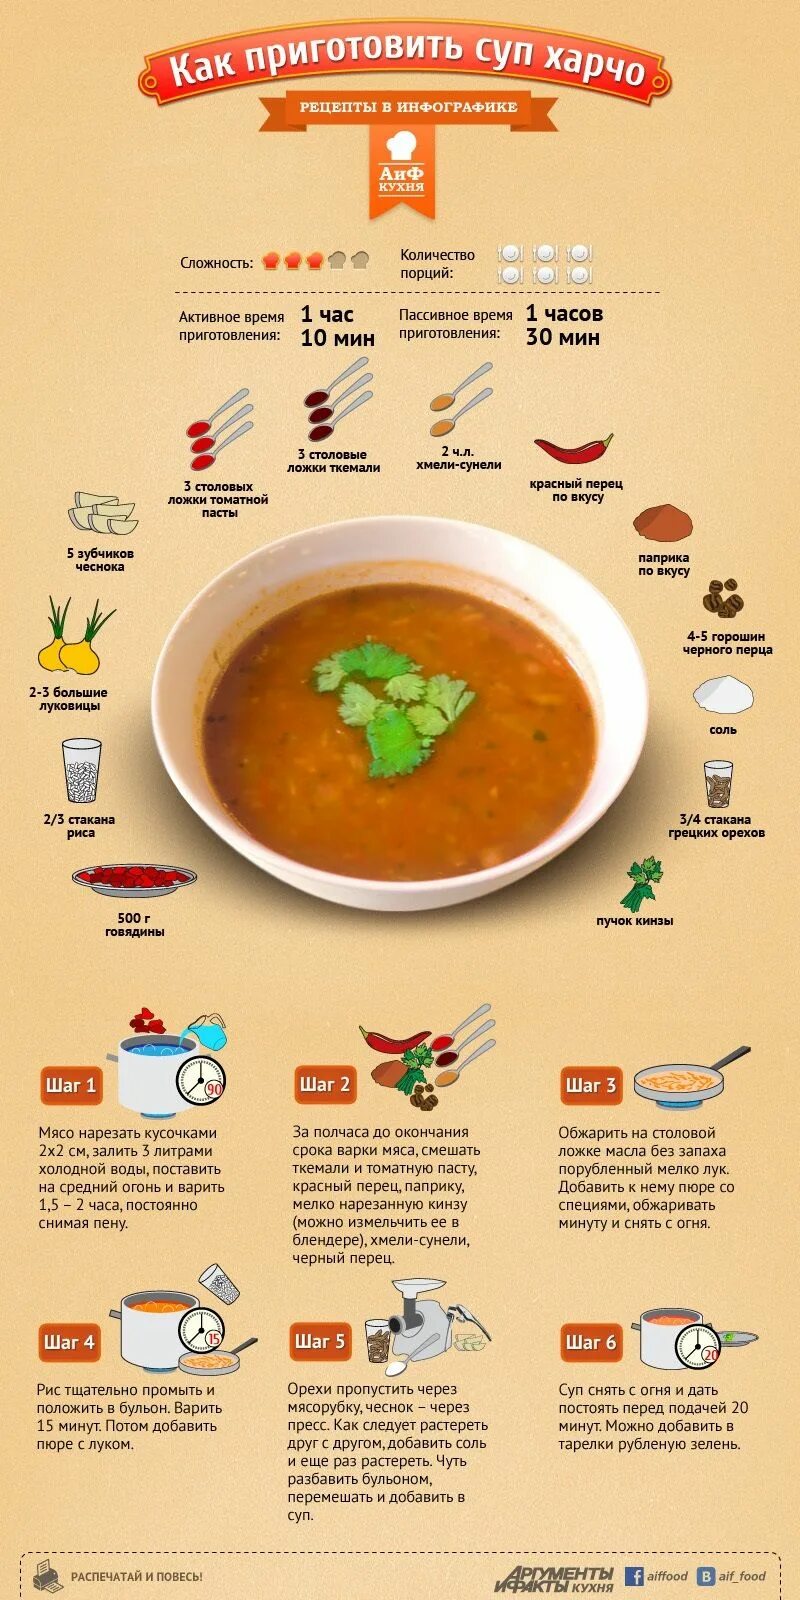 Схема приготовления супа харчо. Рецептура супа харчо. Инфографика суп. Рецепты в картинках. Сколько мяса в порции